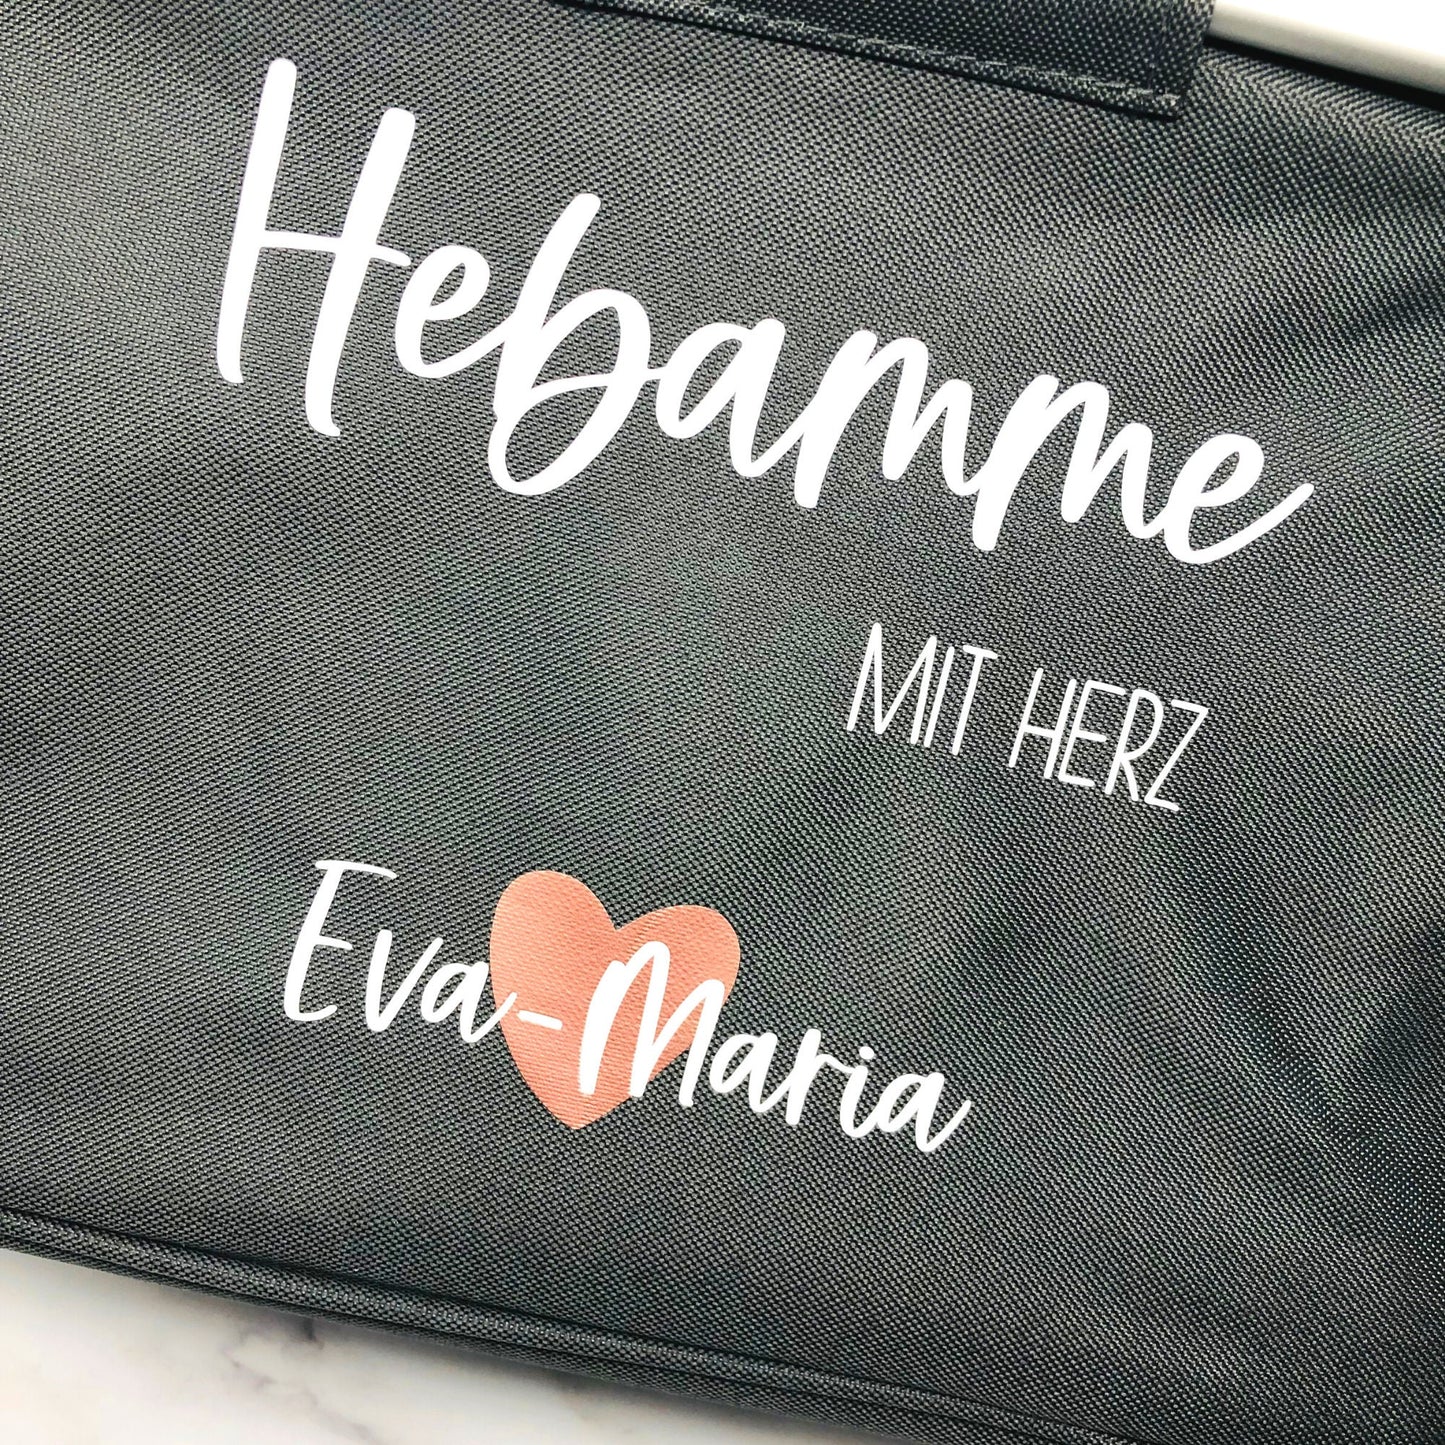 Geschenk Hebamme - personalisierter Einkaufskorb mit Name - Hebamme mit Herz - verschiedene Farben - faltbar - Farbe Grau, Navy oder Schwarz